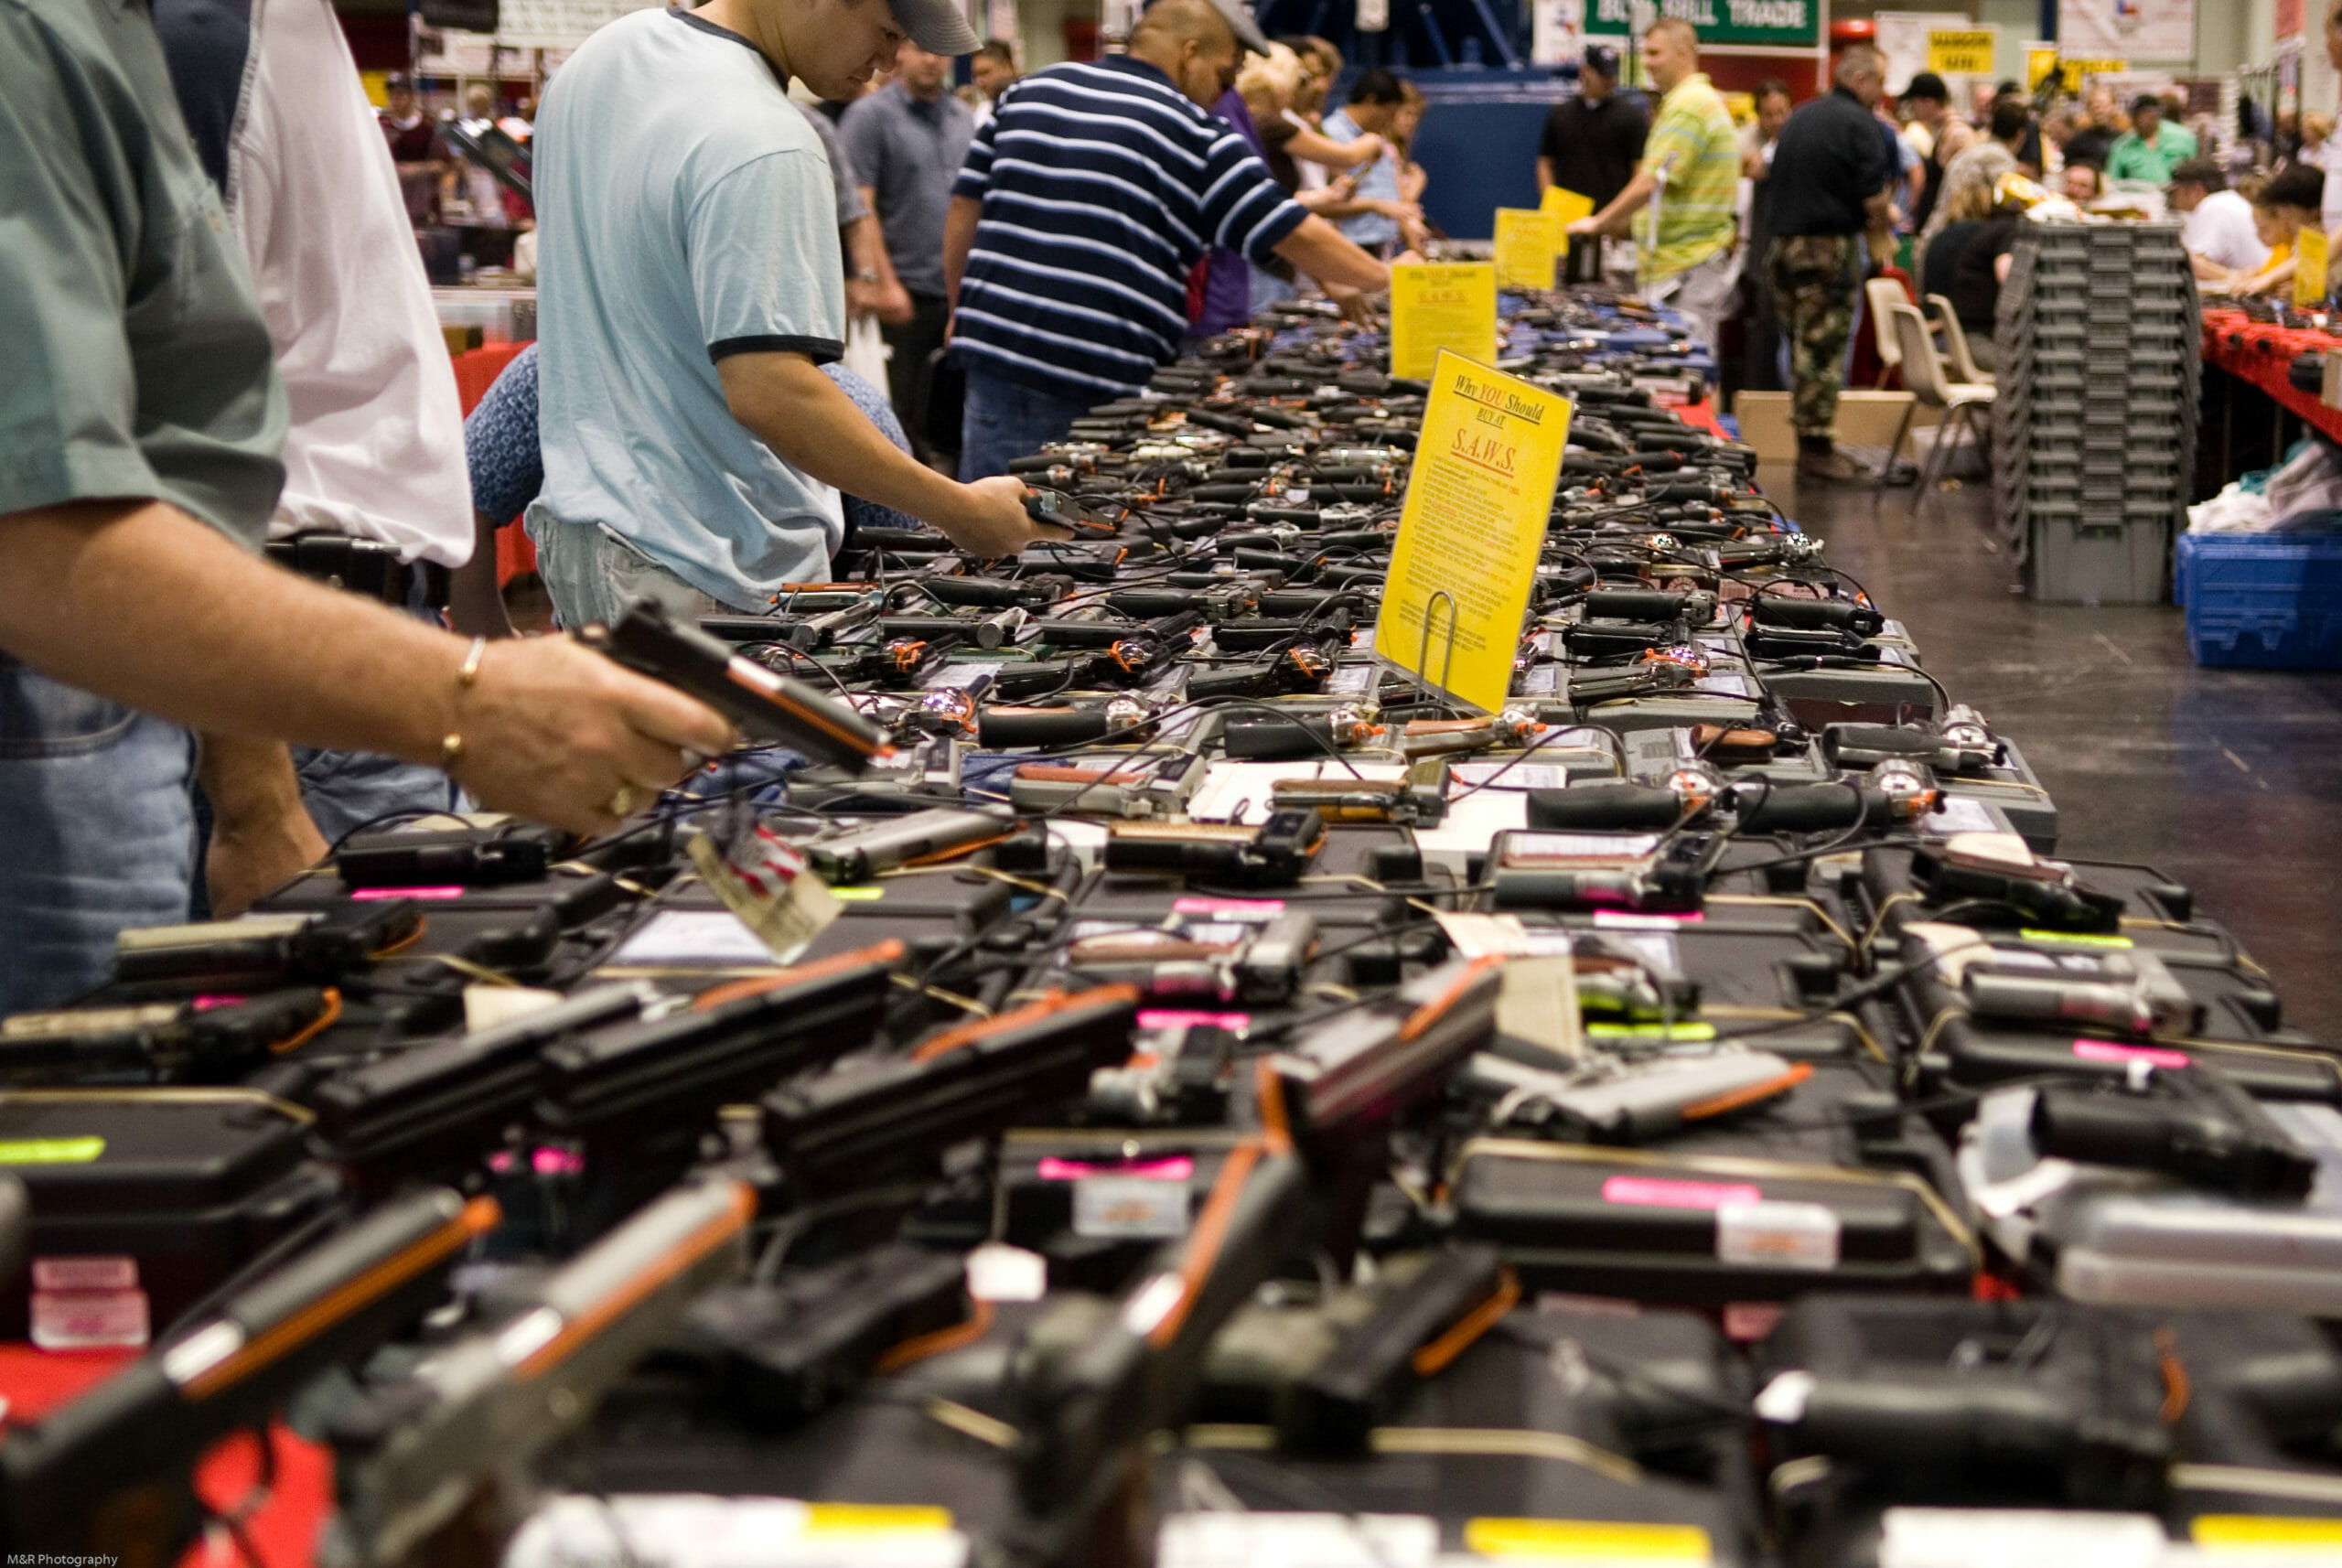 Read more about the article FAKTA: Civile i USA ejer 310 millioner skydevåben